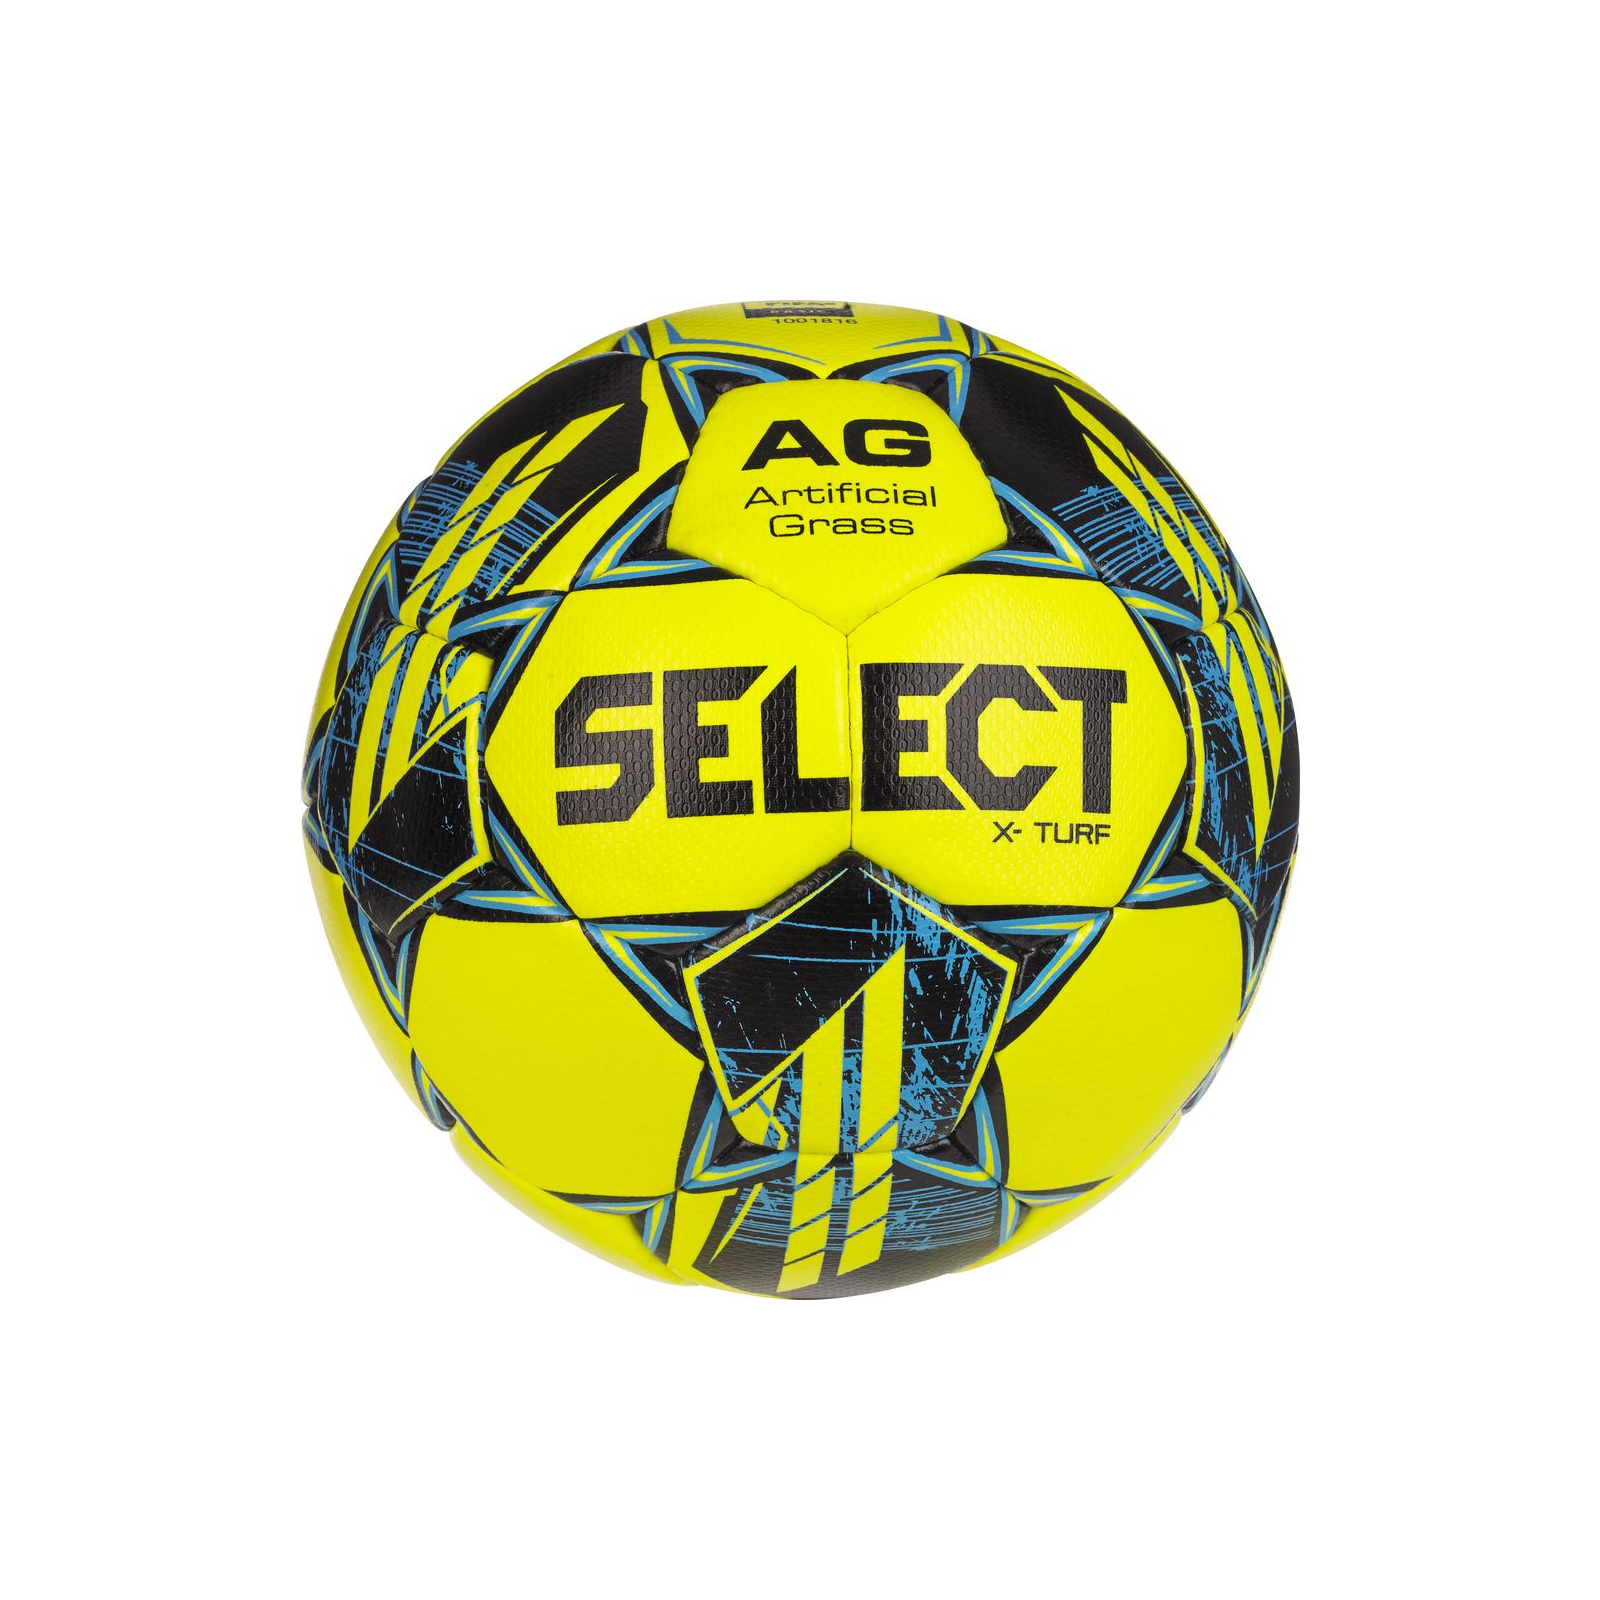 М'яч футбольний Select X-TURF v23 жовто-синій Уні 5 (5703543316021)